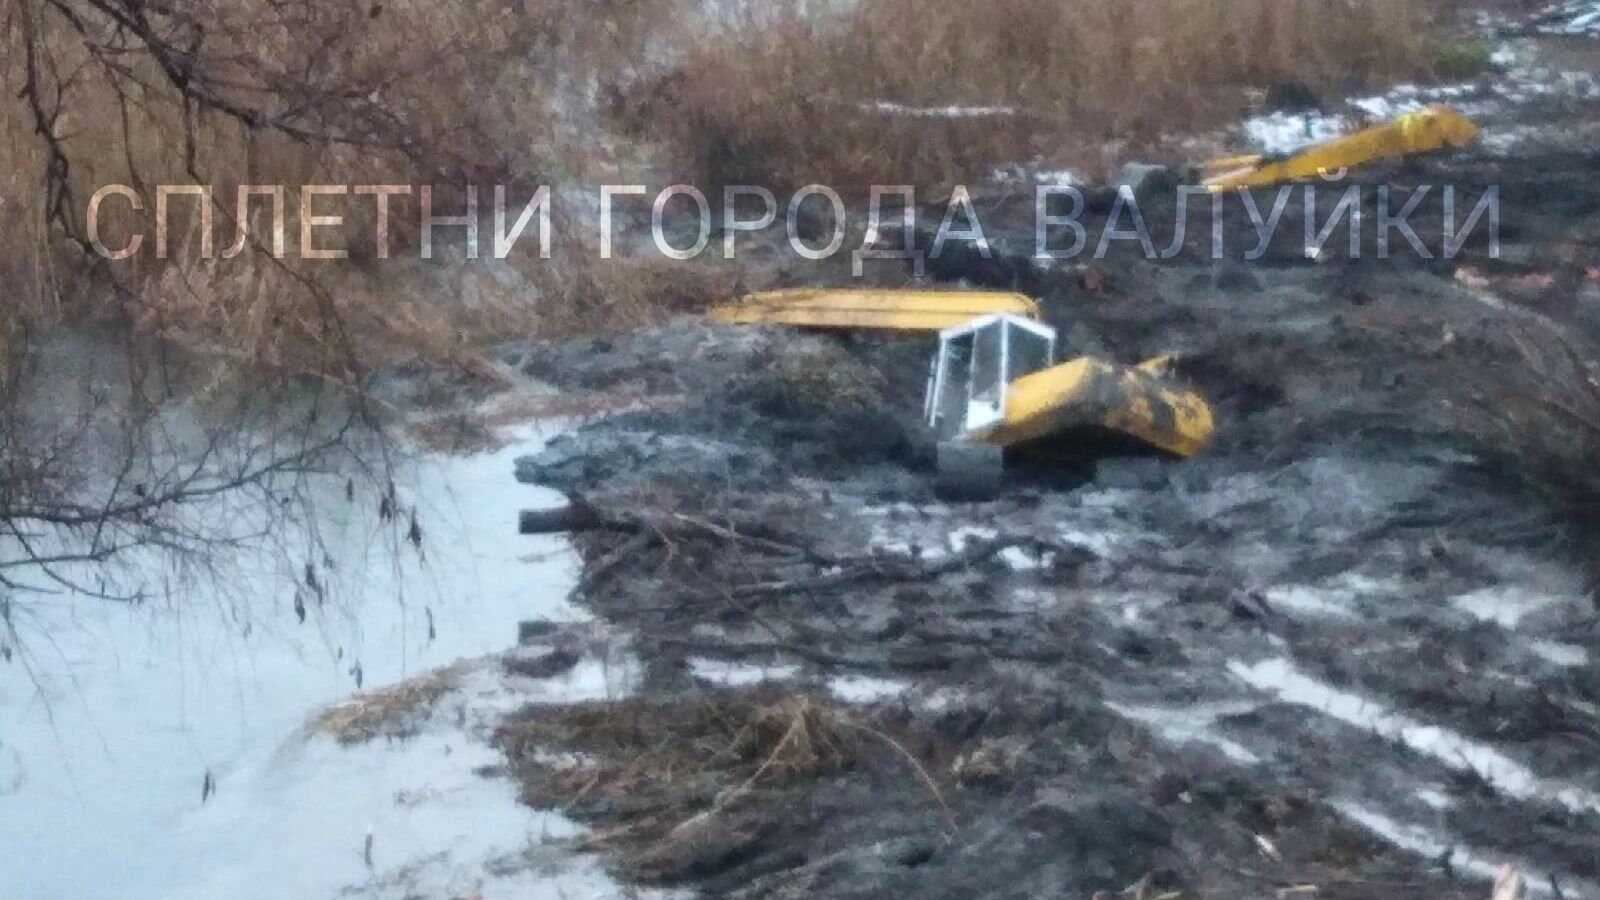 В Белгородской области при очистке реки утопили экскаватор